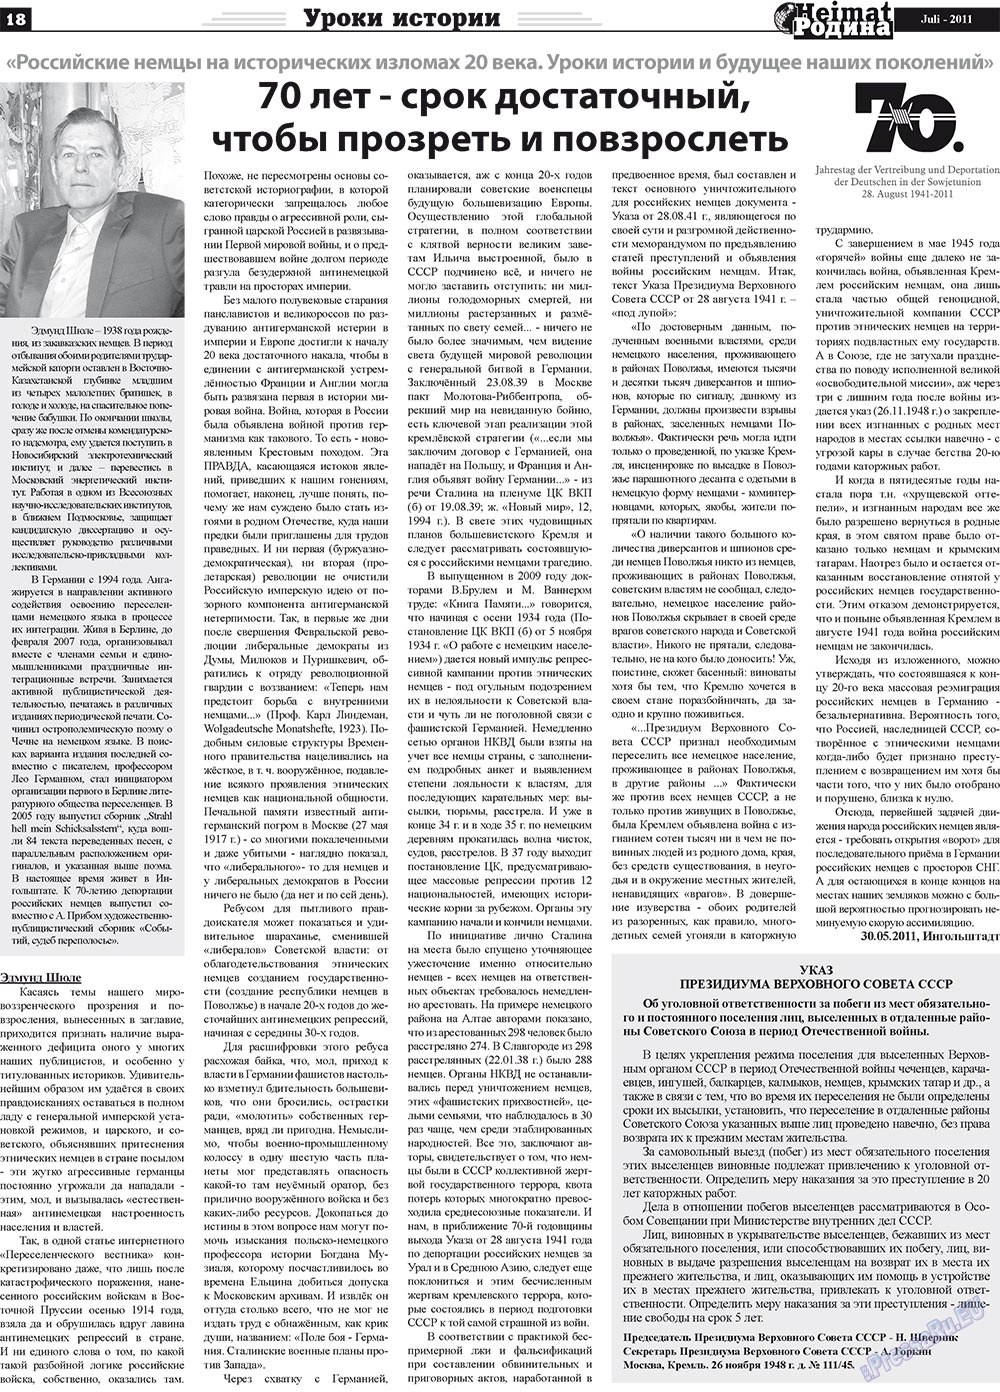 Heimat-Родина (Zeitung). 2011 Jahr, Ausgabe 7, Seite 18